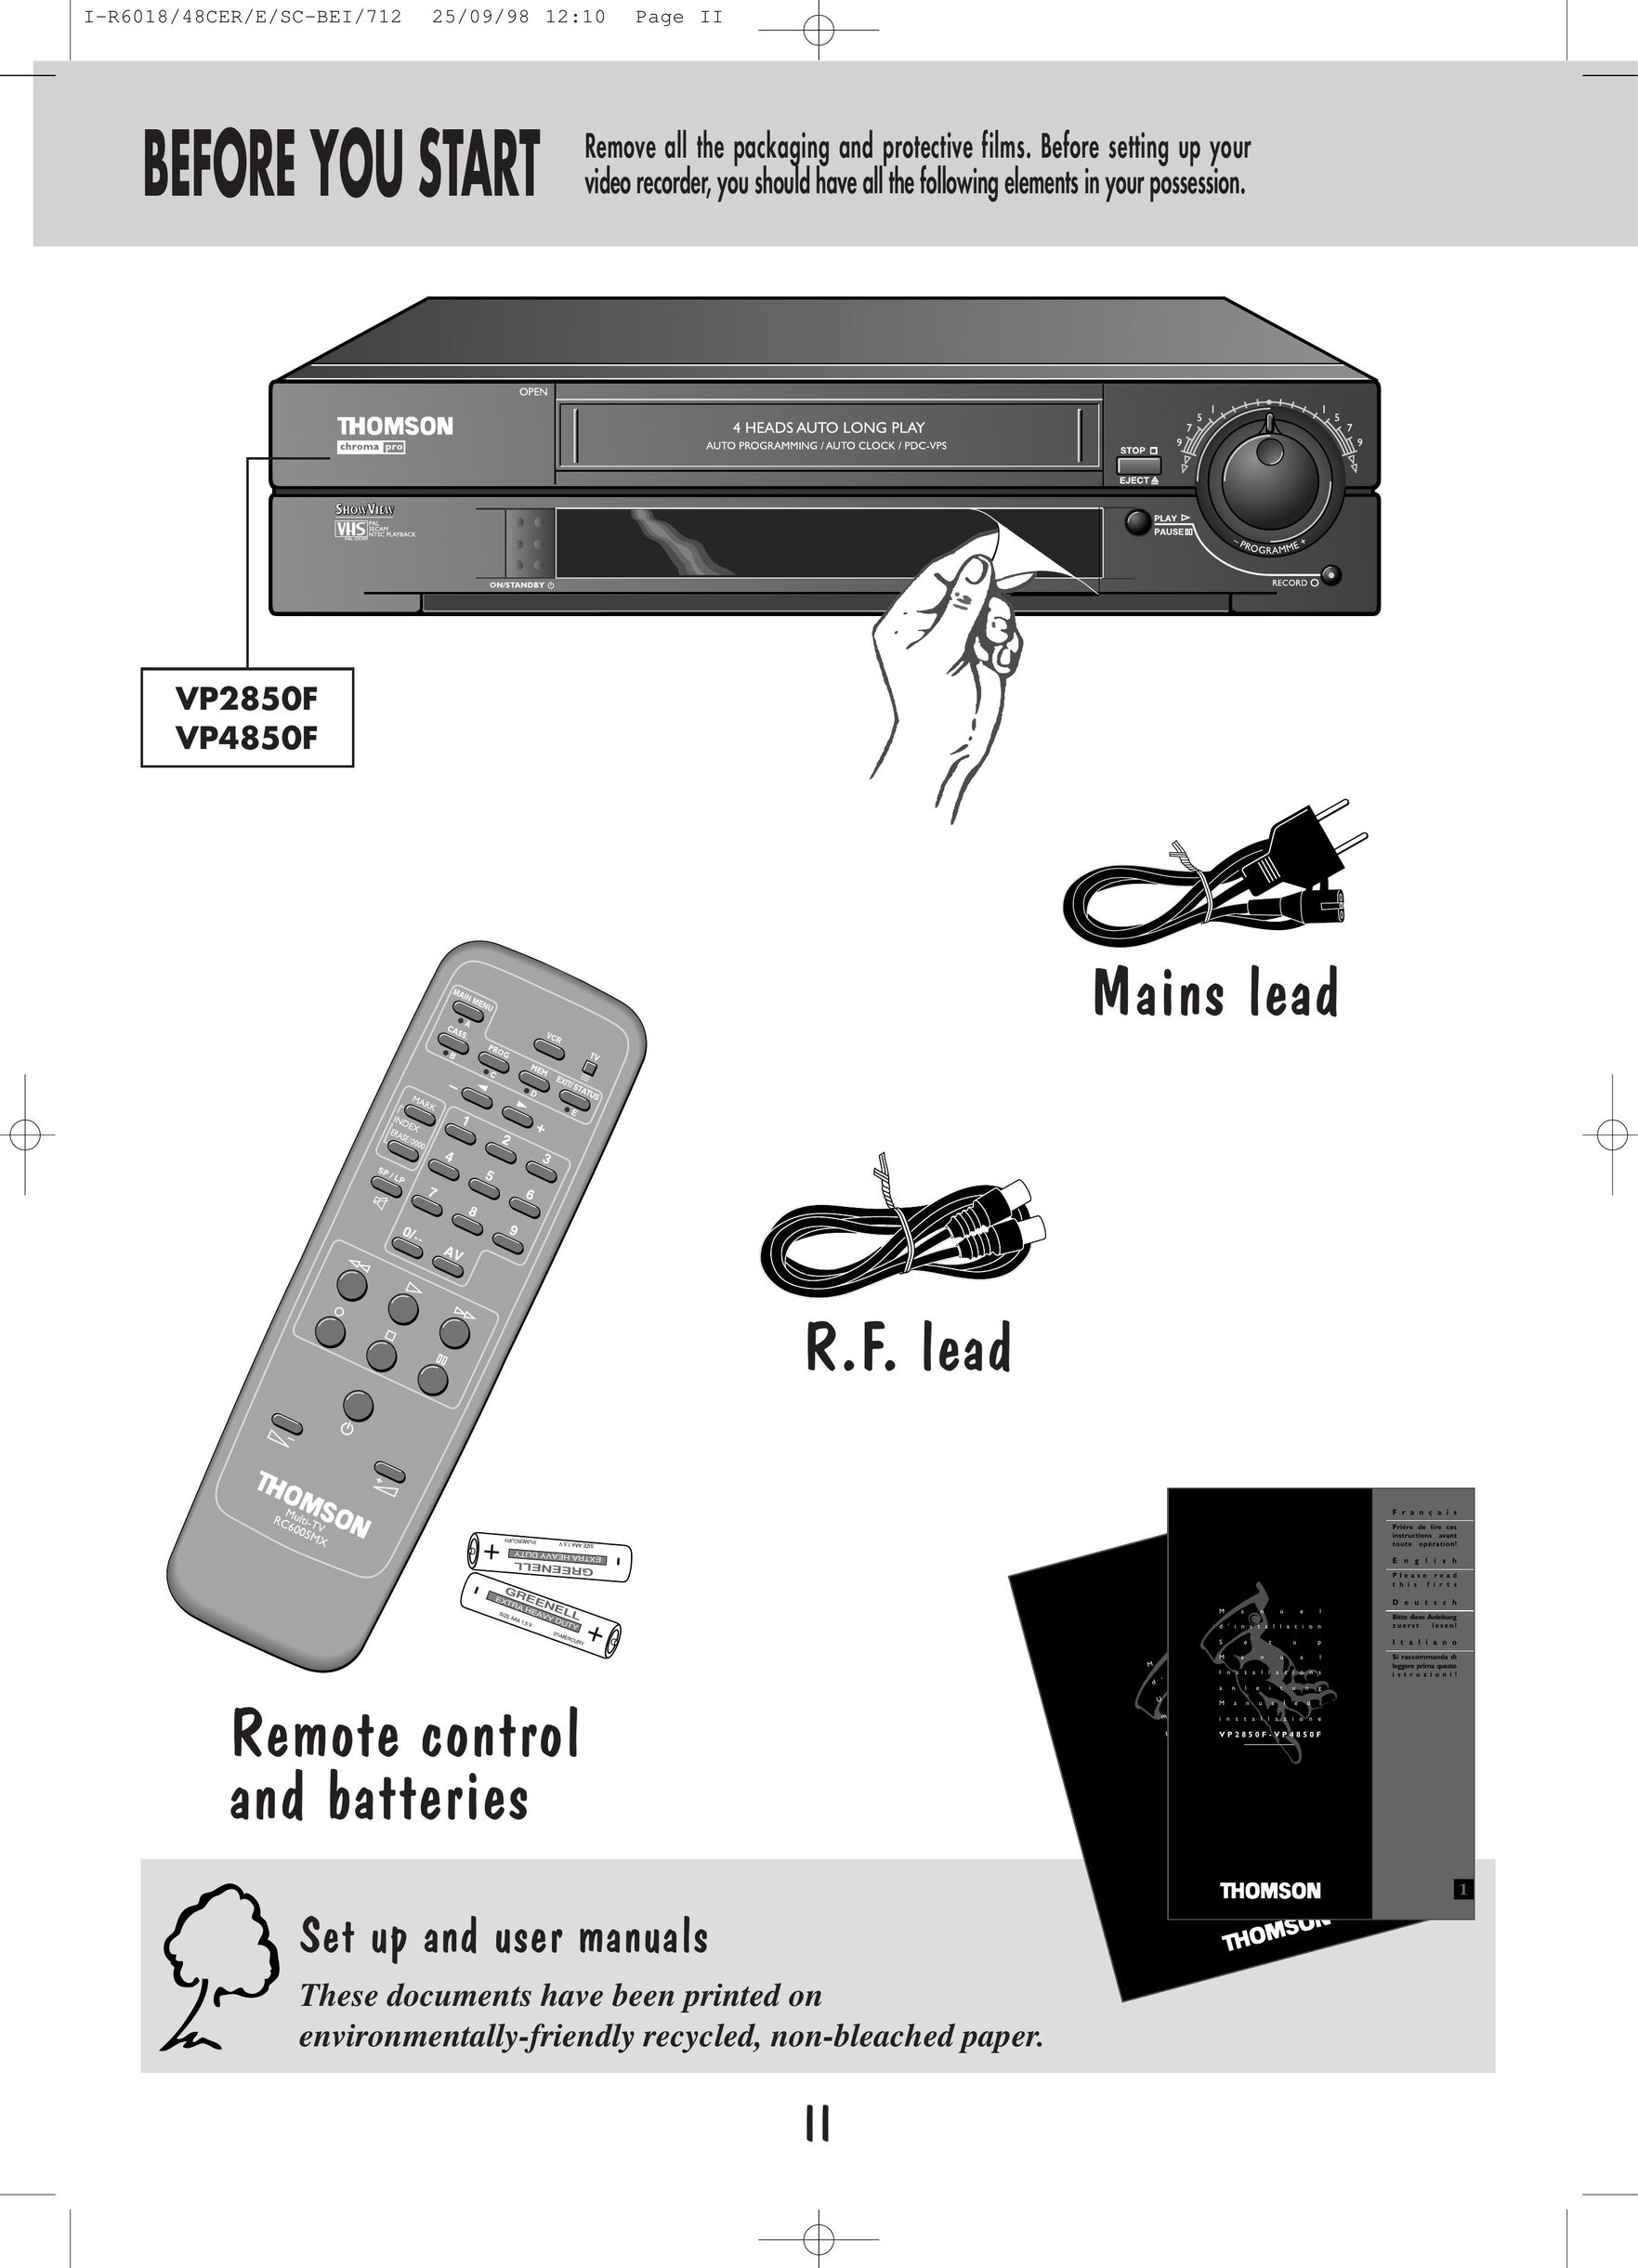 Technicolor - Thomson VP4850F VCR User Manual